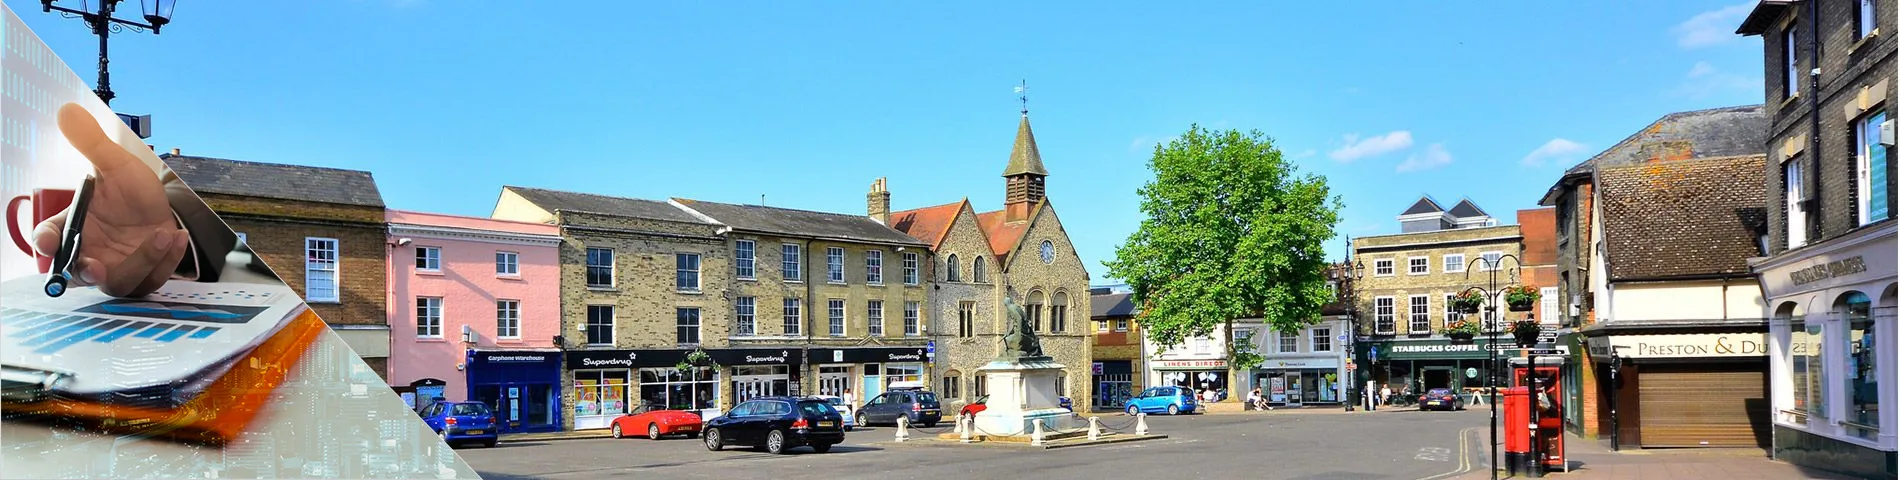 Bury St Edmunds - Banque & Finance